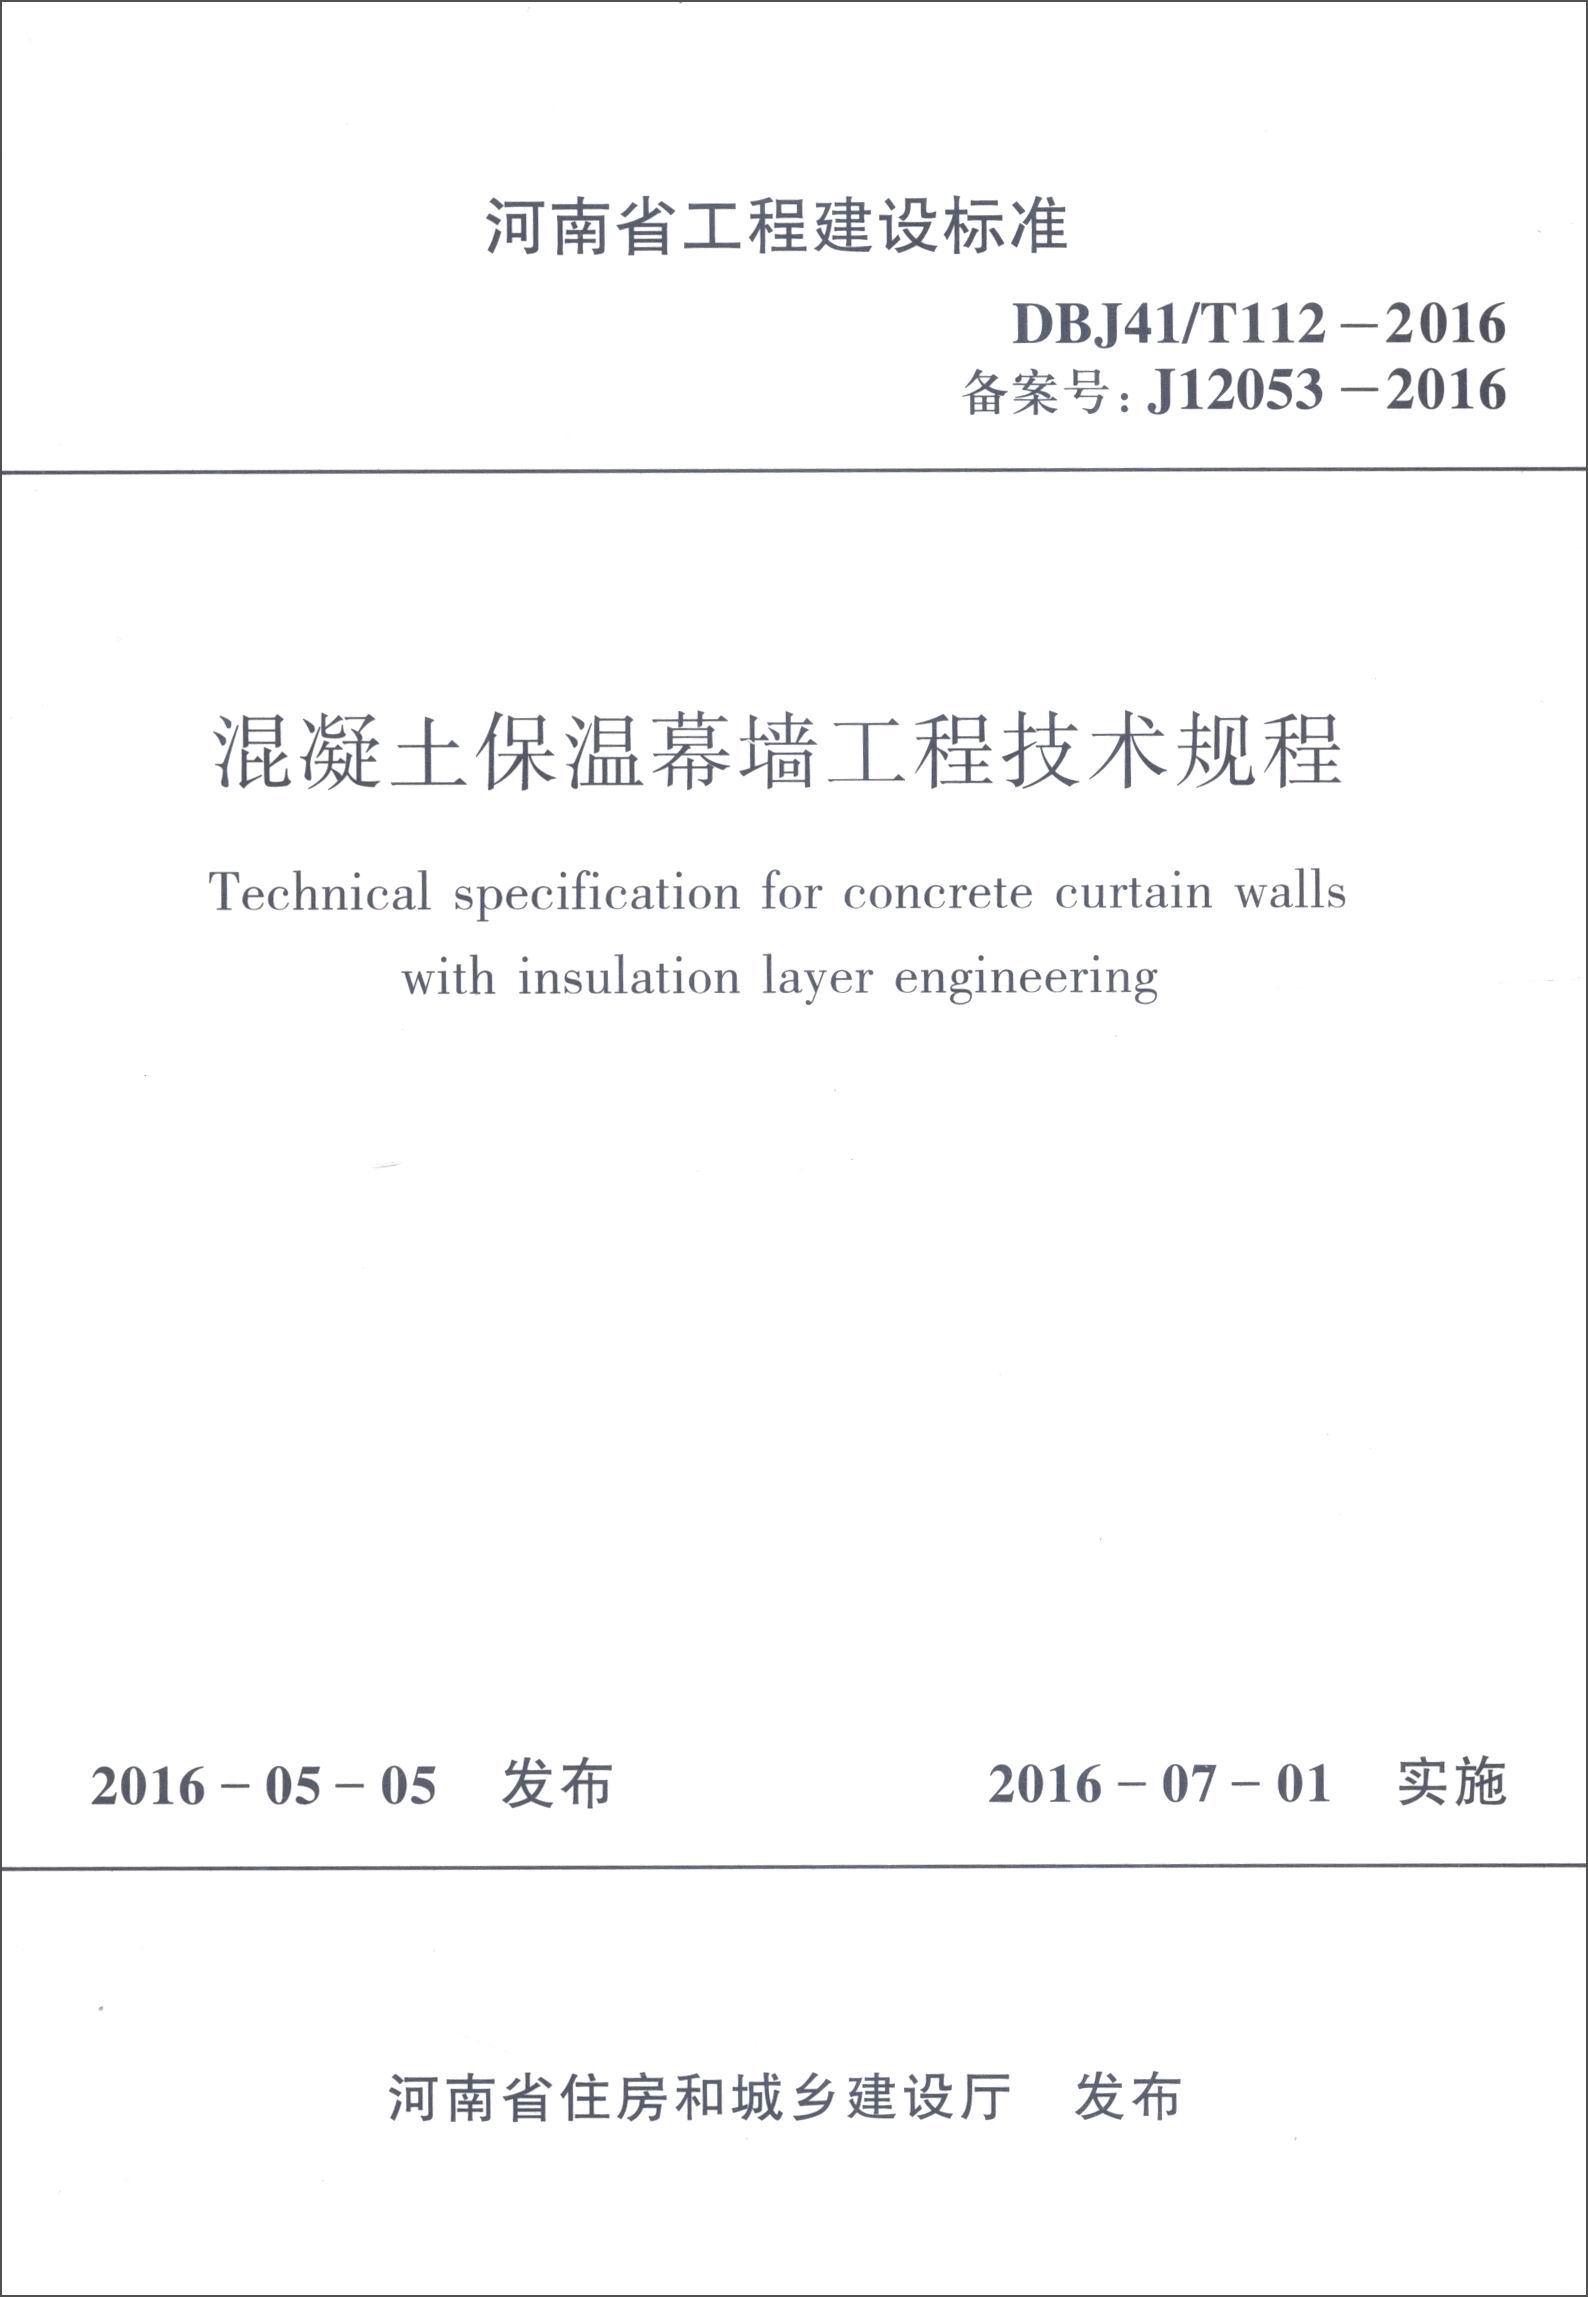 河南省工程建设标准：混凝土保温幕墙工程技术规程（DBJ41/T112-2016 备案号：J12053-2016） mobi格式下载